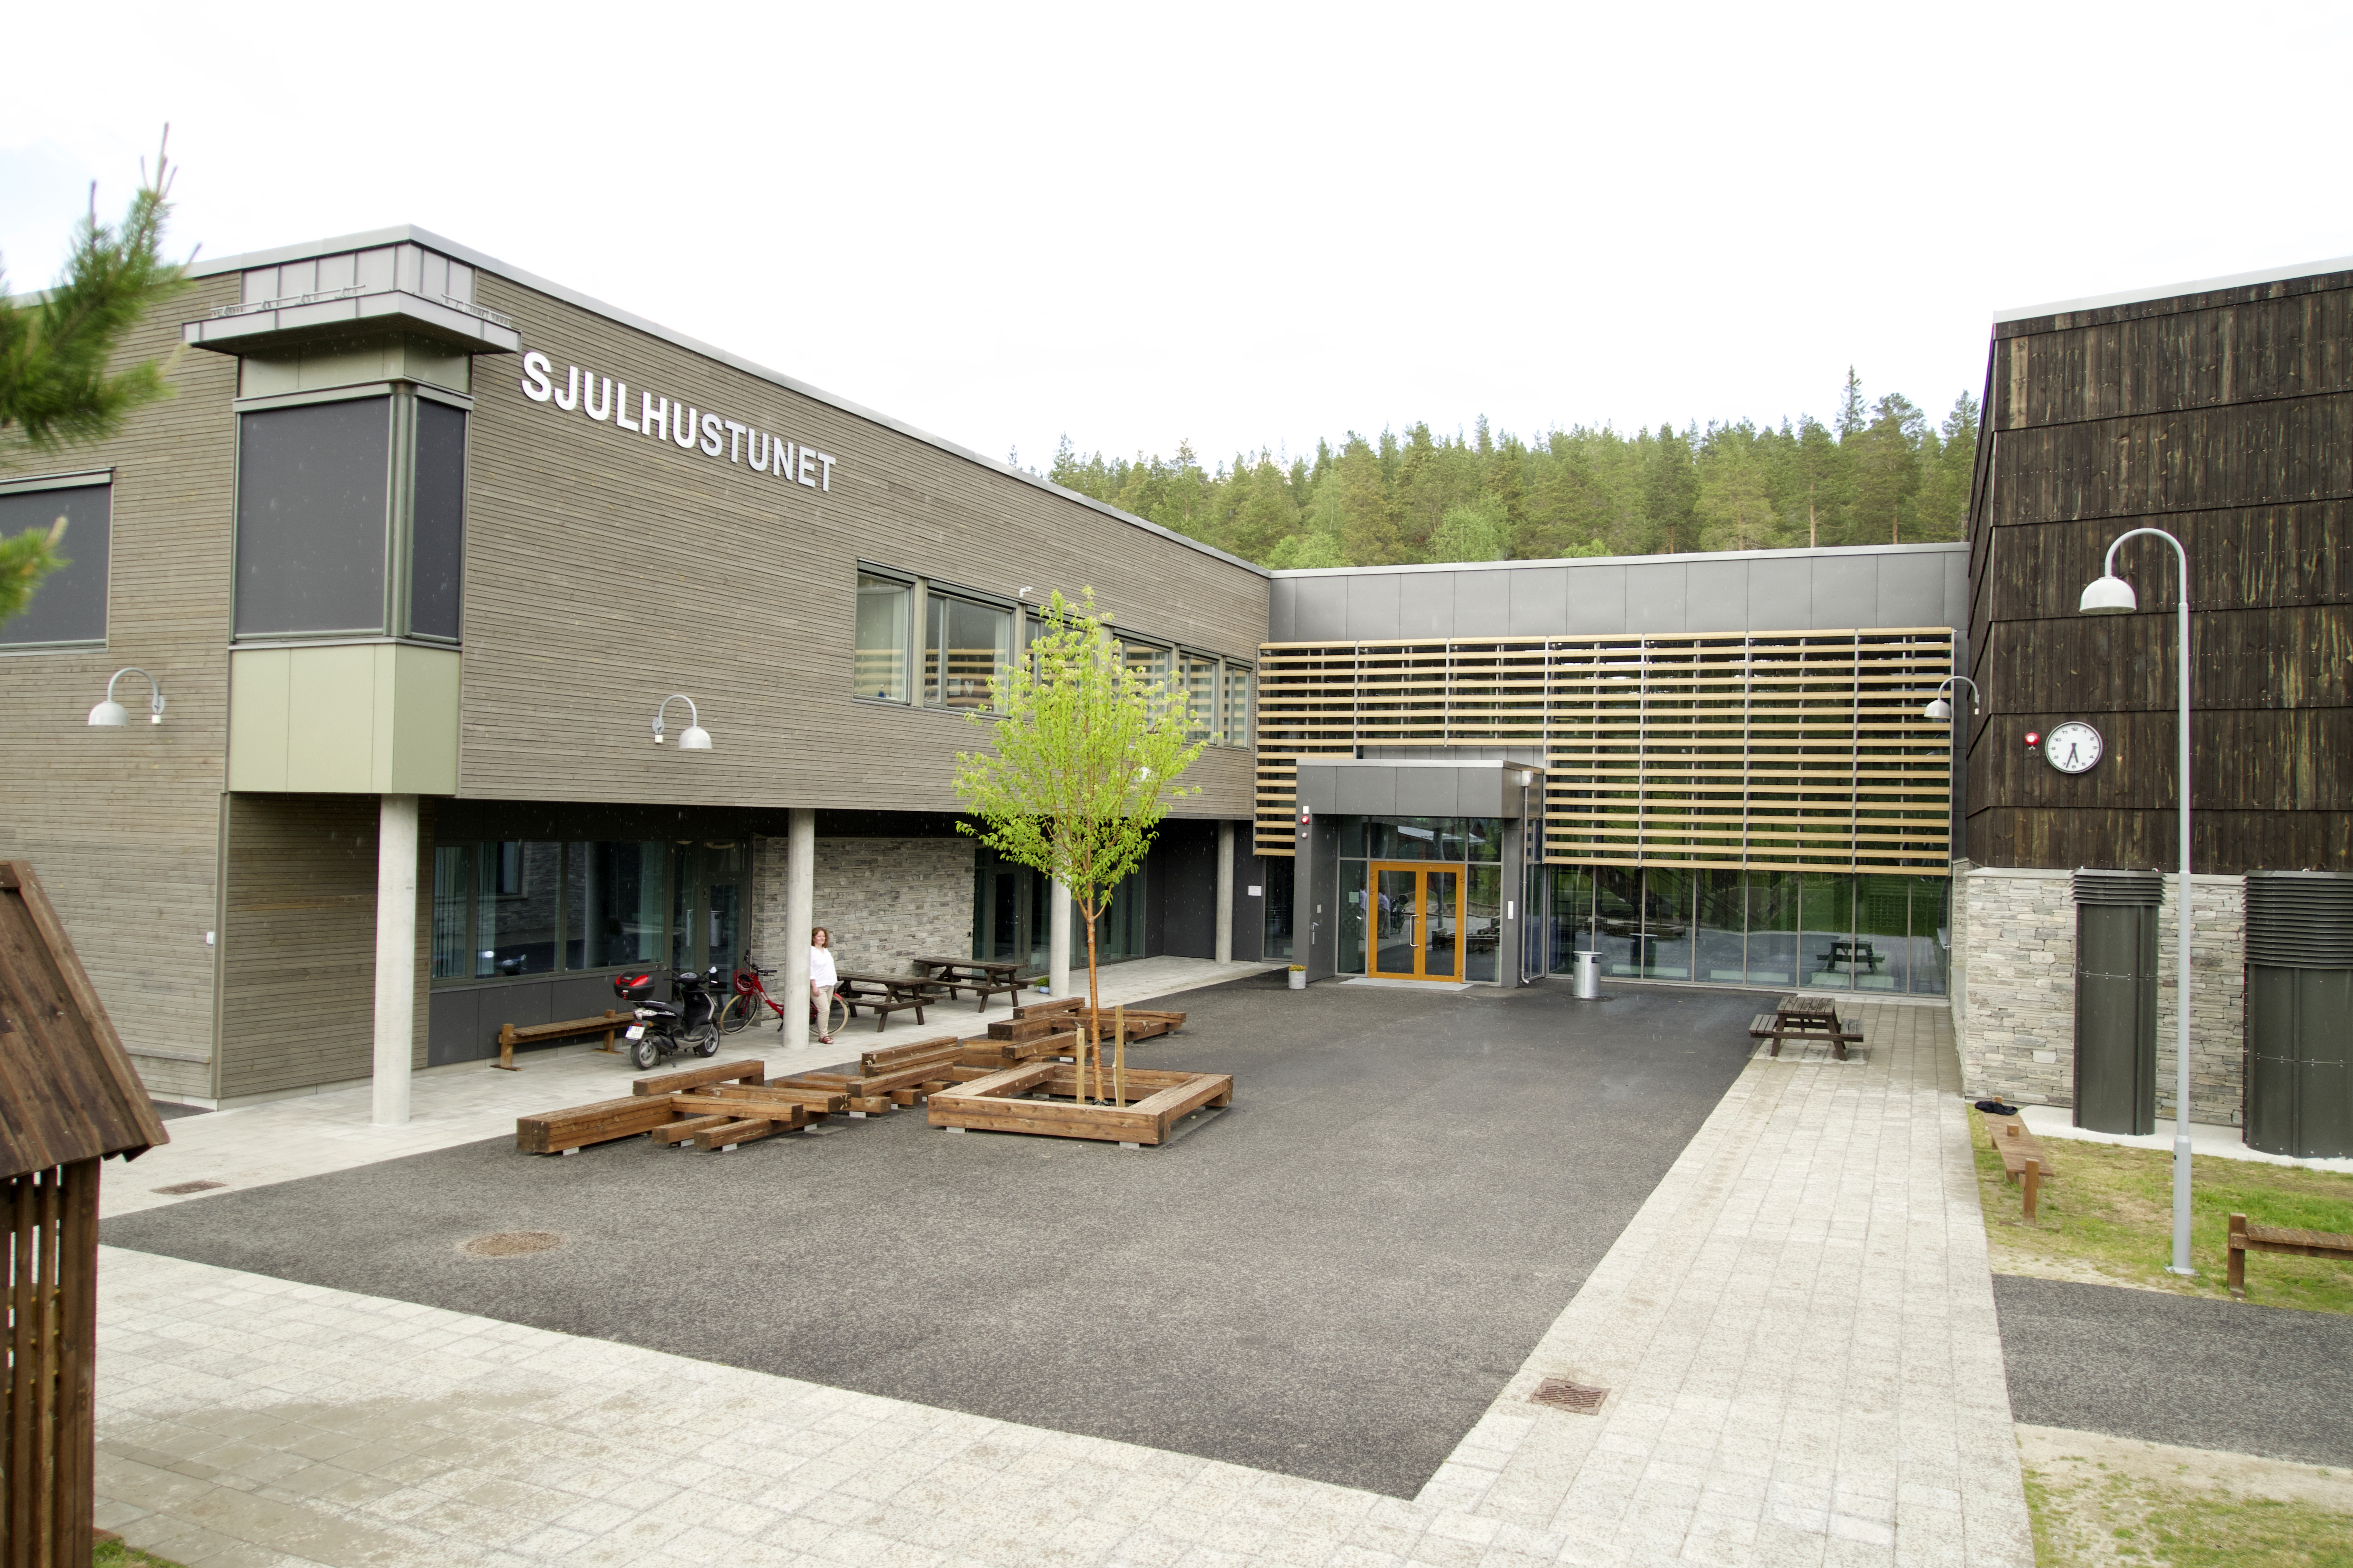 Sjulhustunet rommer nye Alvdal barneskole, Alvdalshallen, Kulturstua og Alvdal kulturskole. Foto: Alvdal kommune.